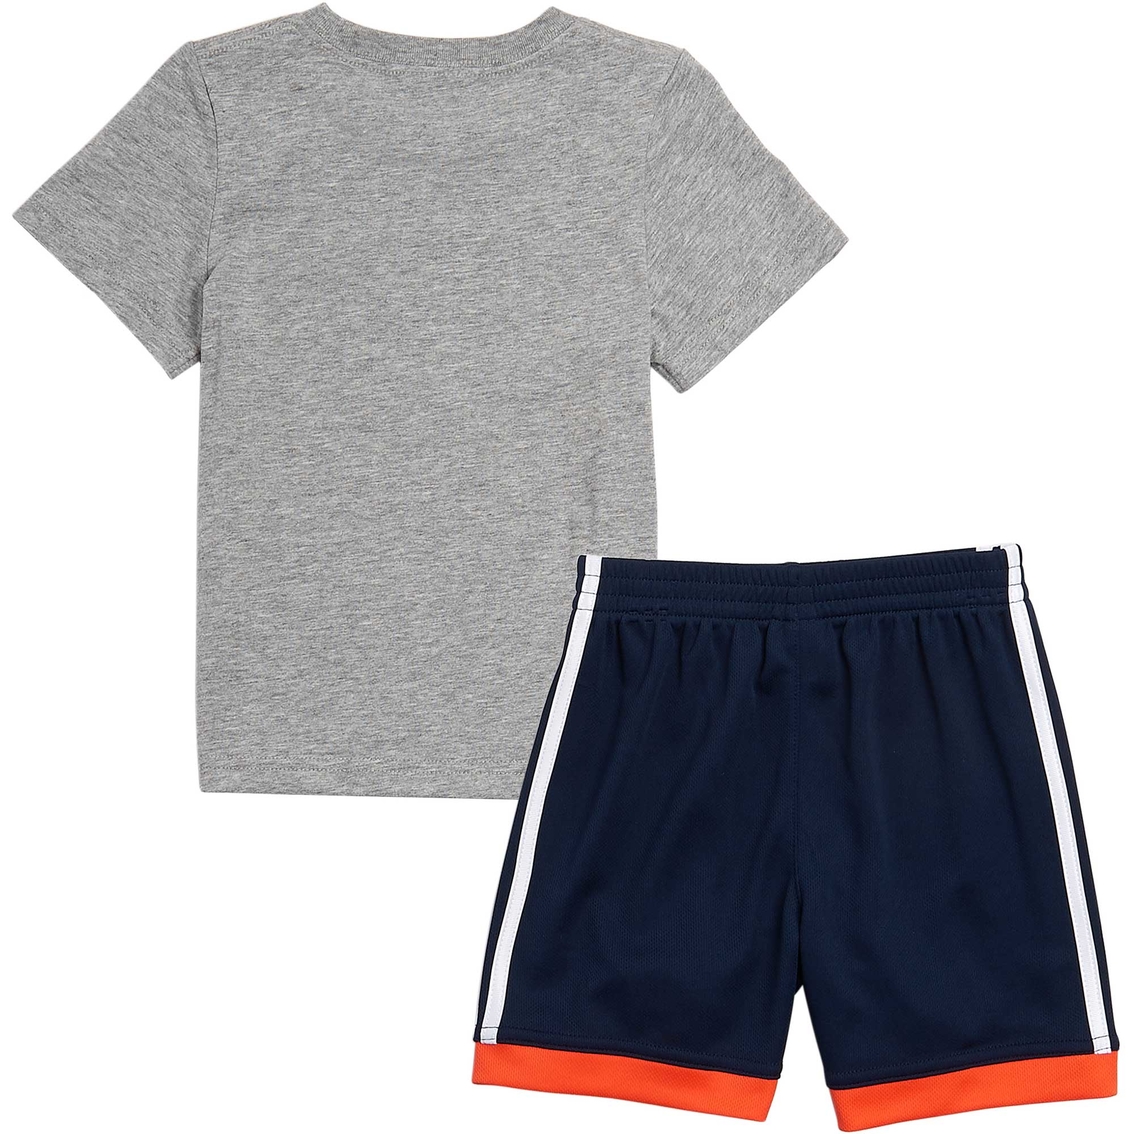 adidas Infant Boys Graphic Cotton Shorts Set - Image 2 of 2